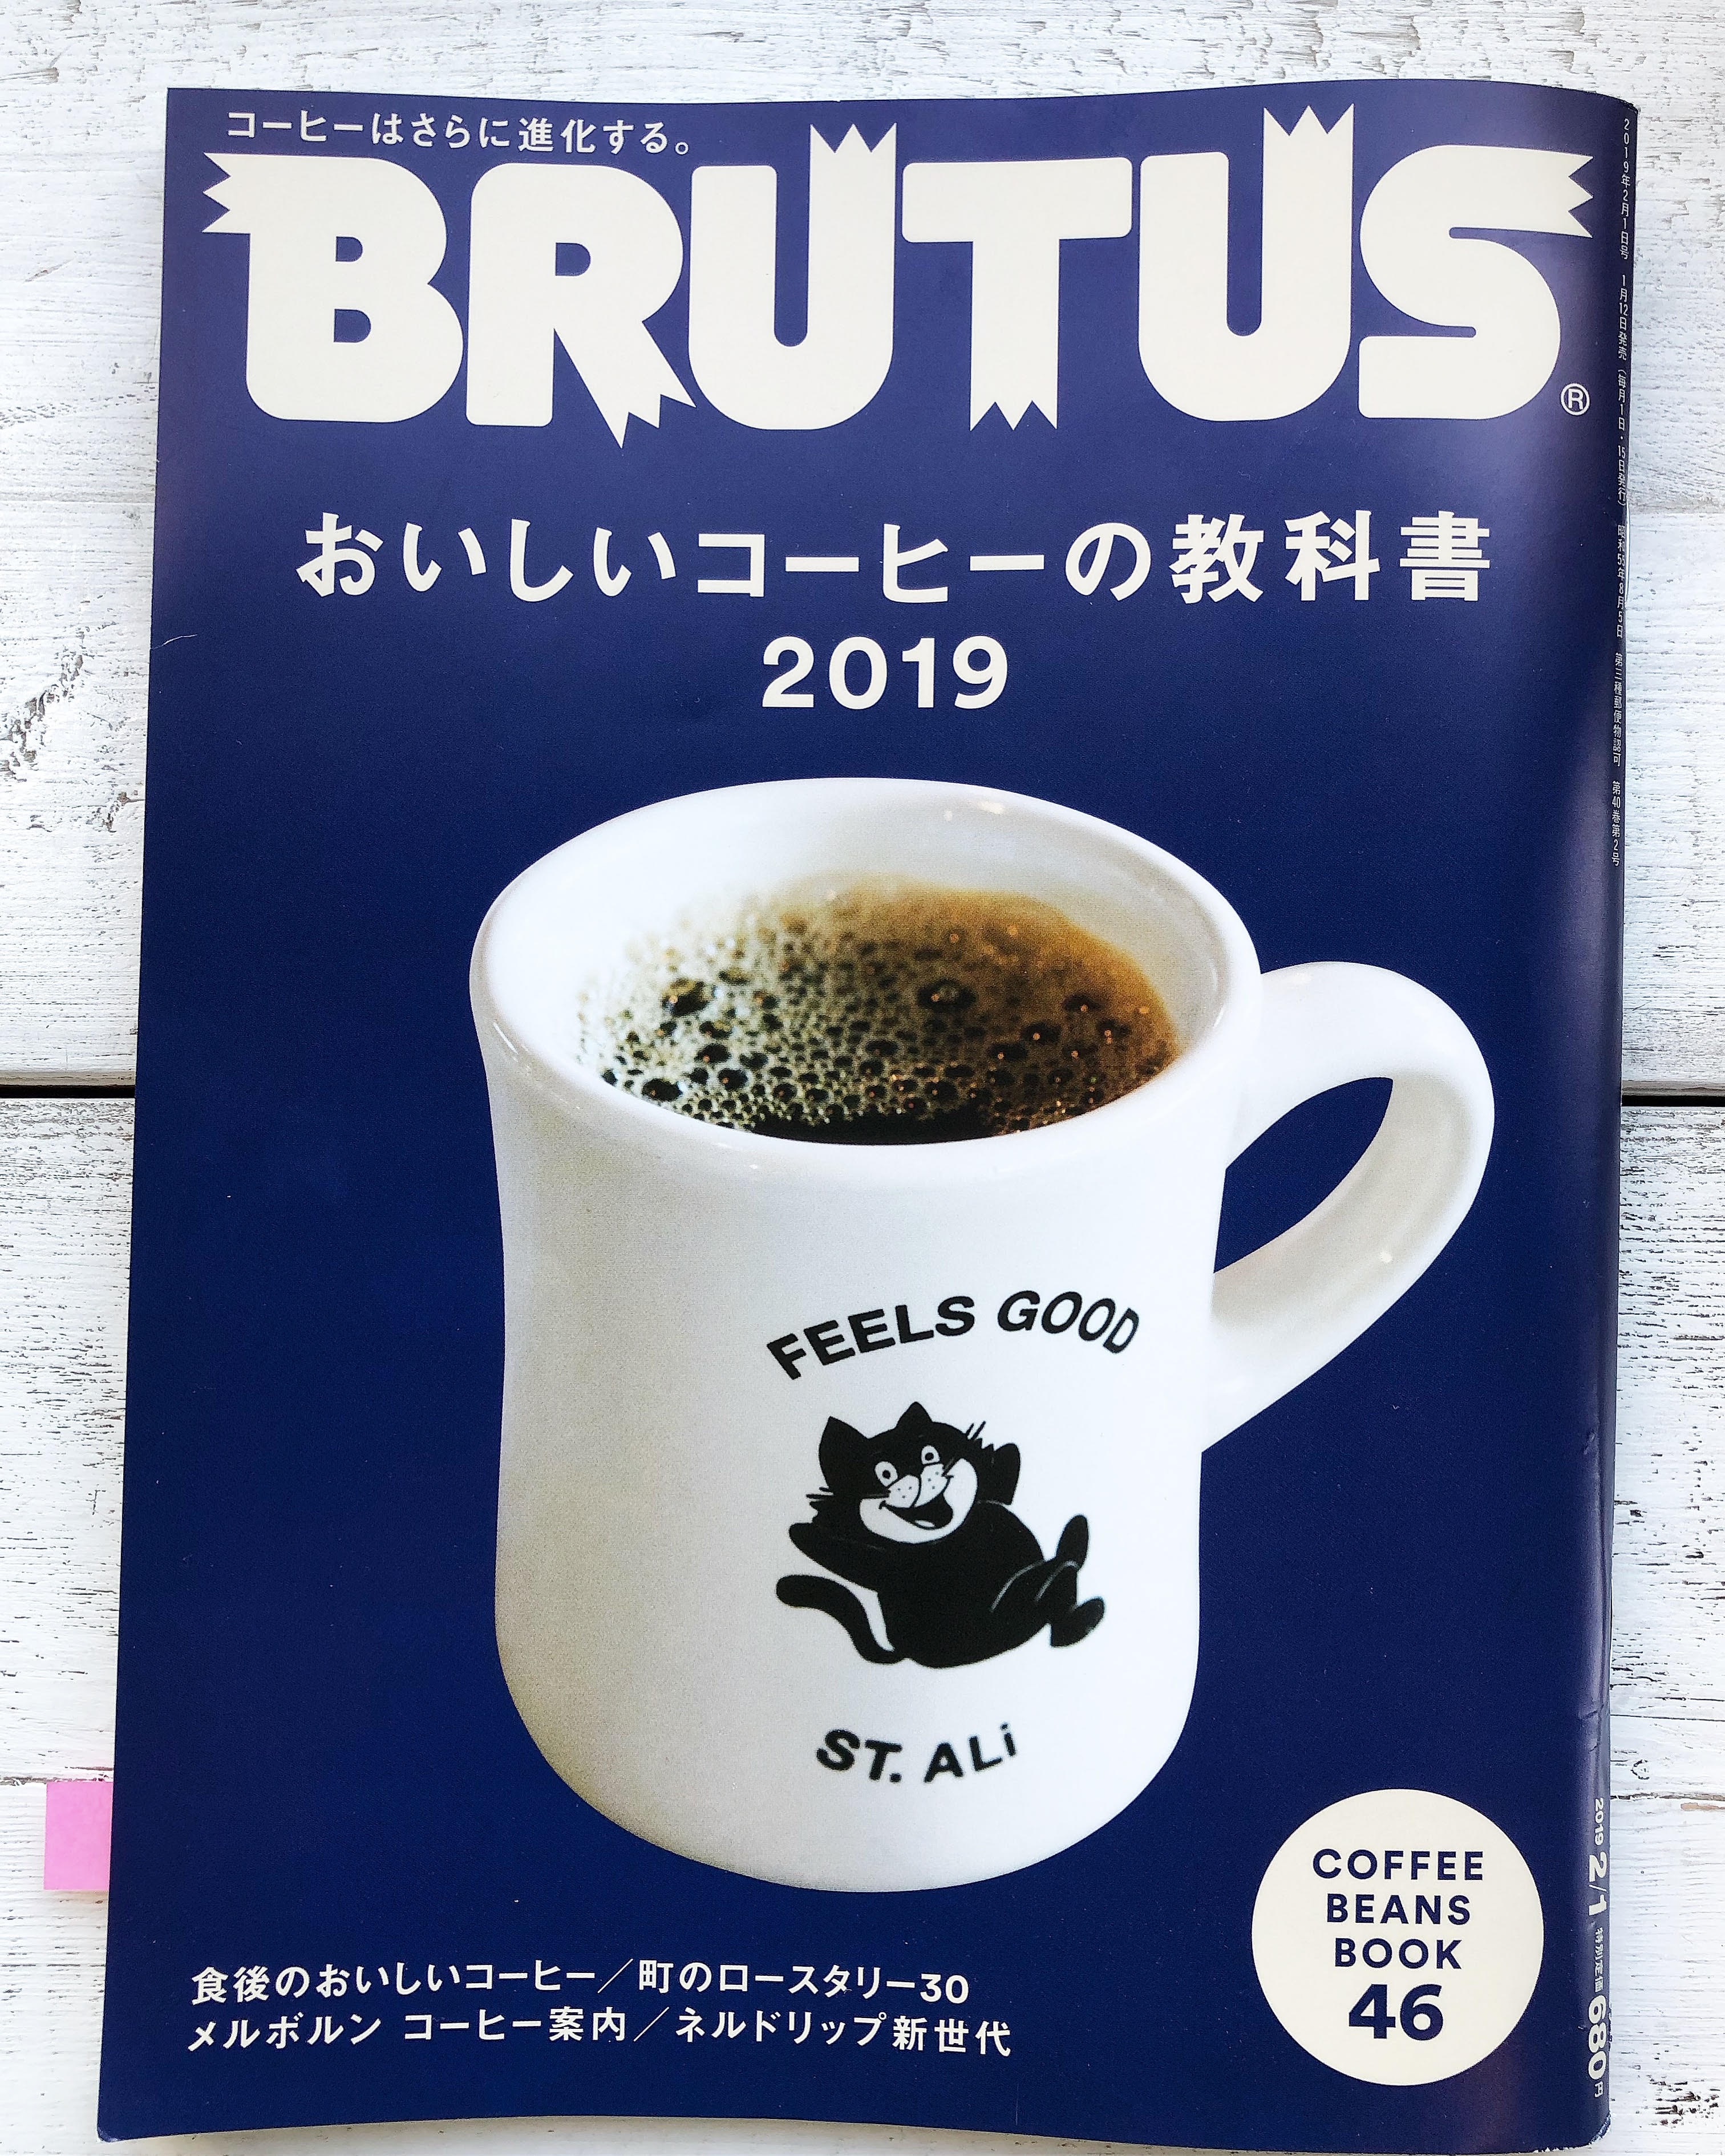 BRUTUS,おいしいコーヒーの教科書